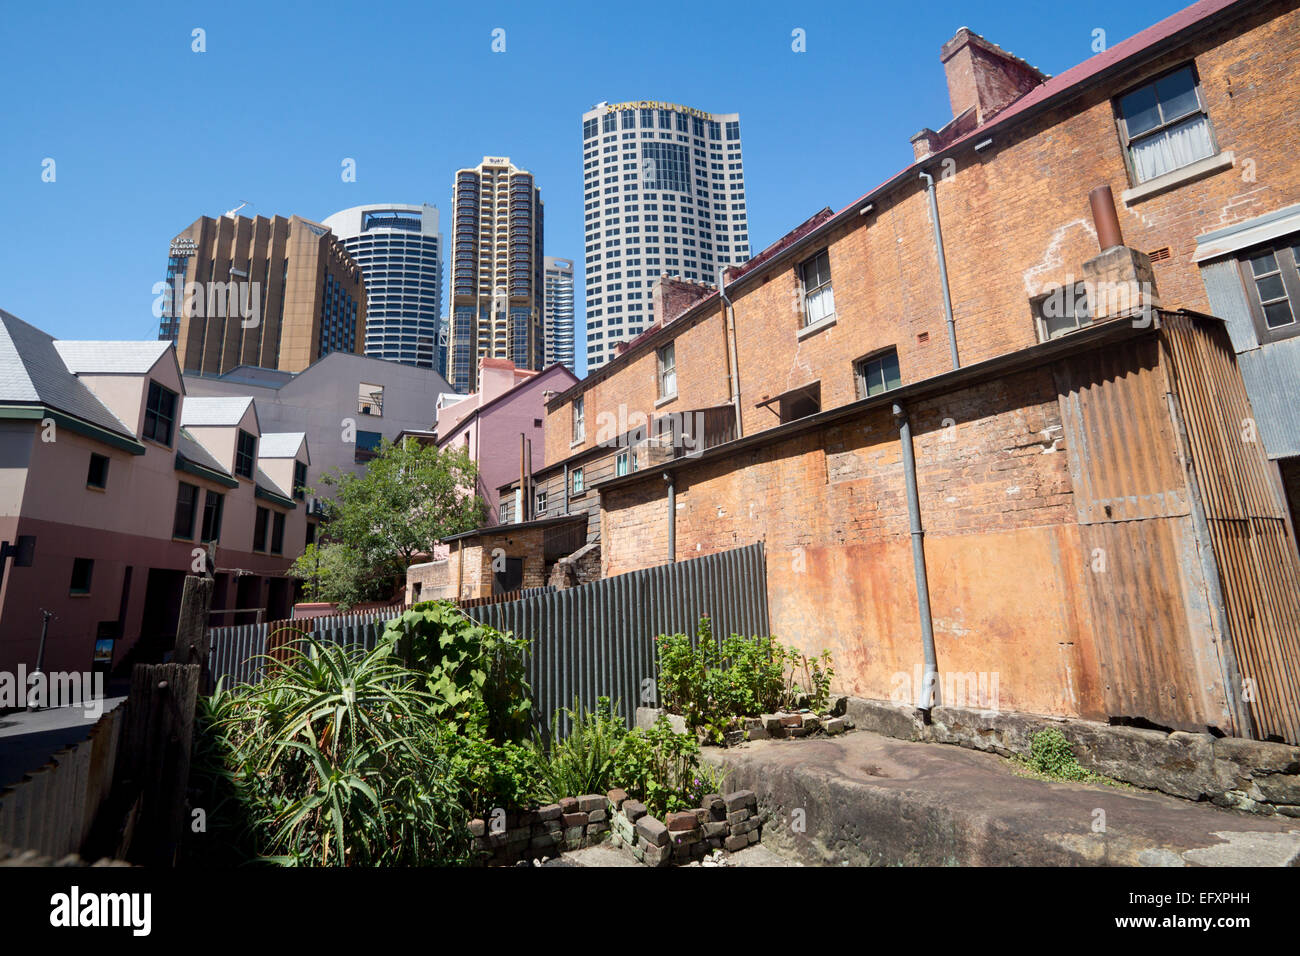 L'arrière de la 19e siècle exposée de maisons formant Susannah Place Museum et tour de blocs contemporain moderne Sydney NSW Australie Banque D'Images